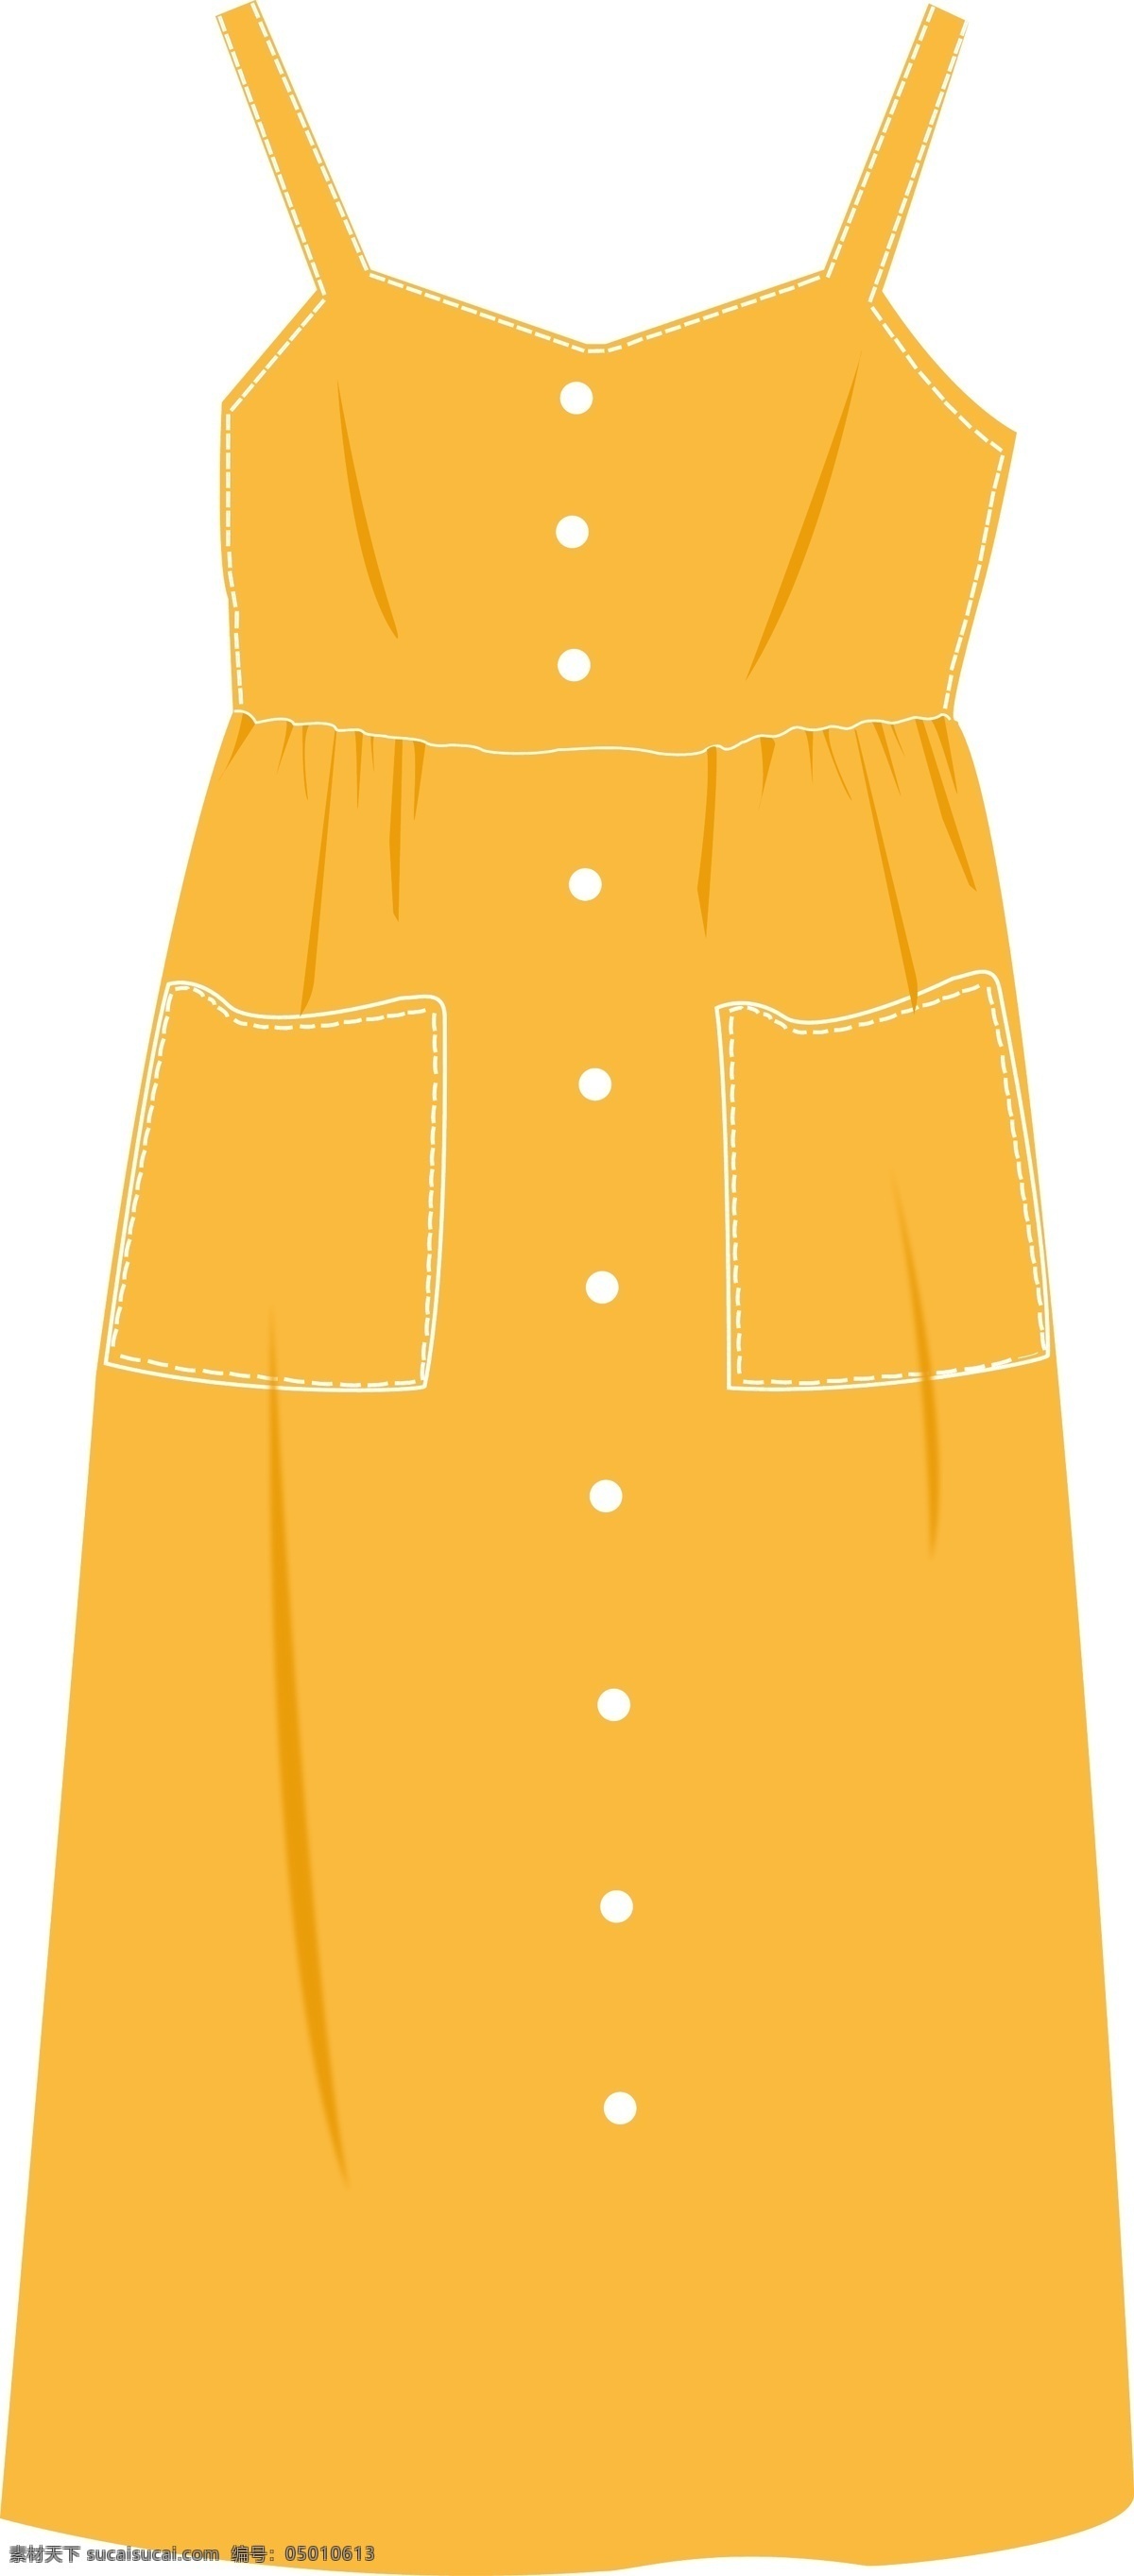 黄色一体裙子 黄色 扣子 一体